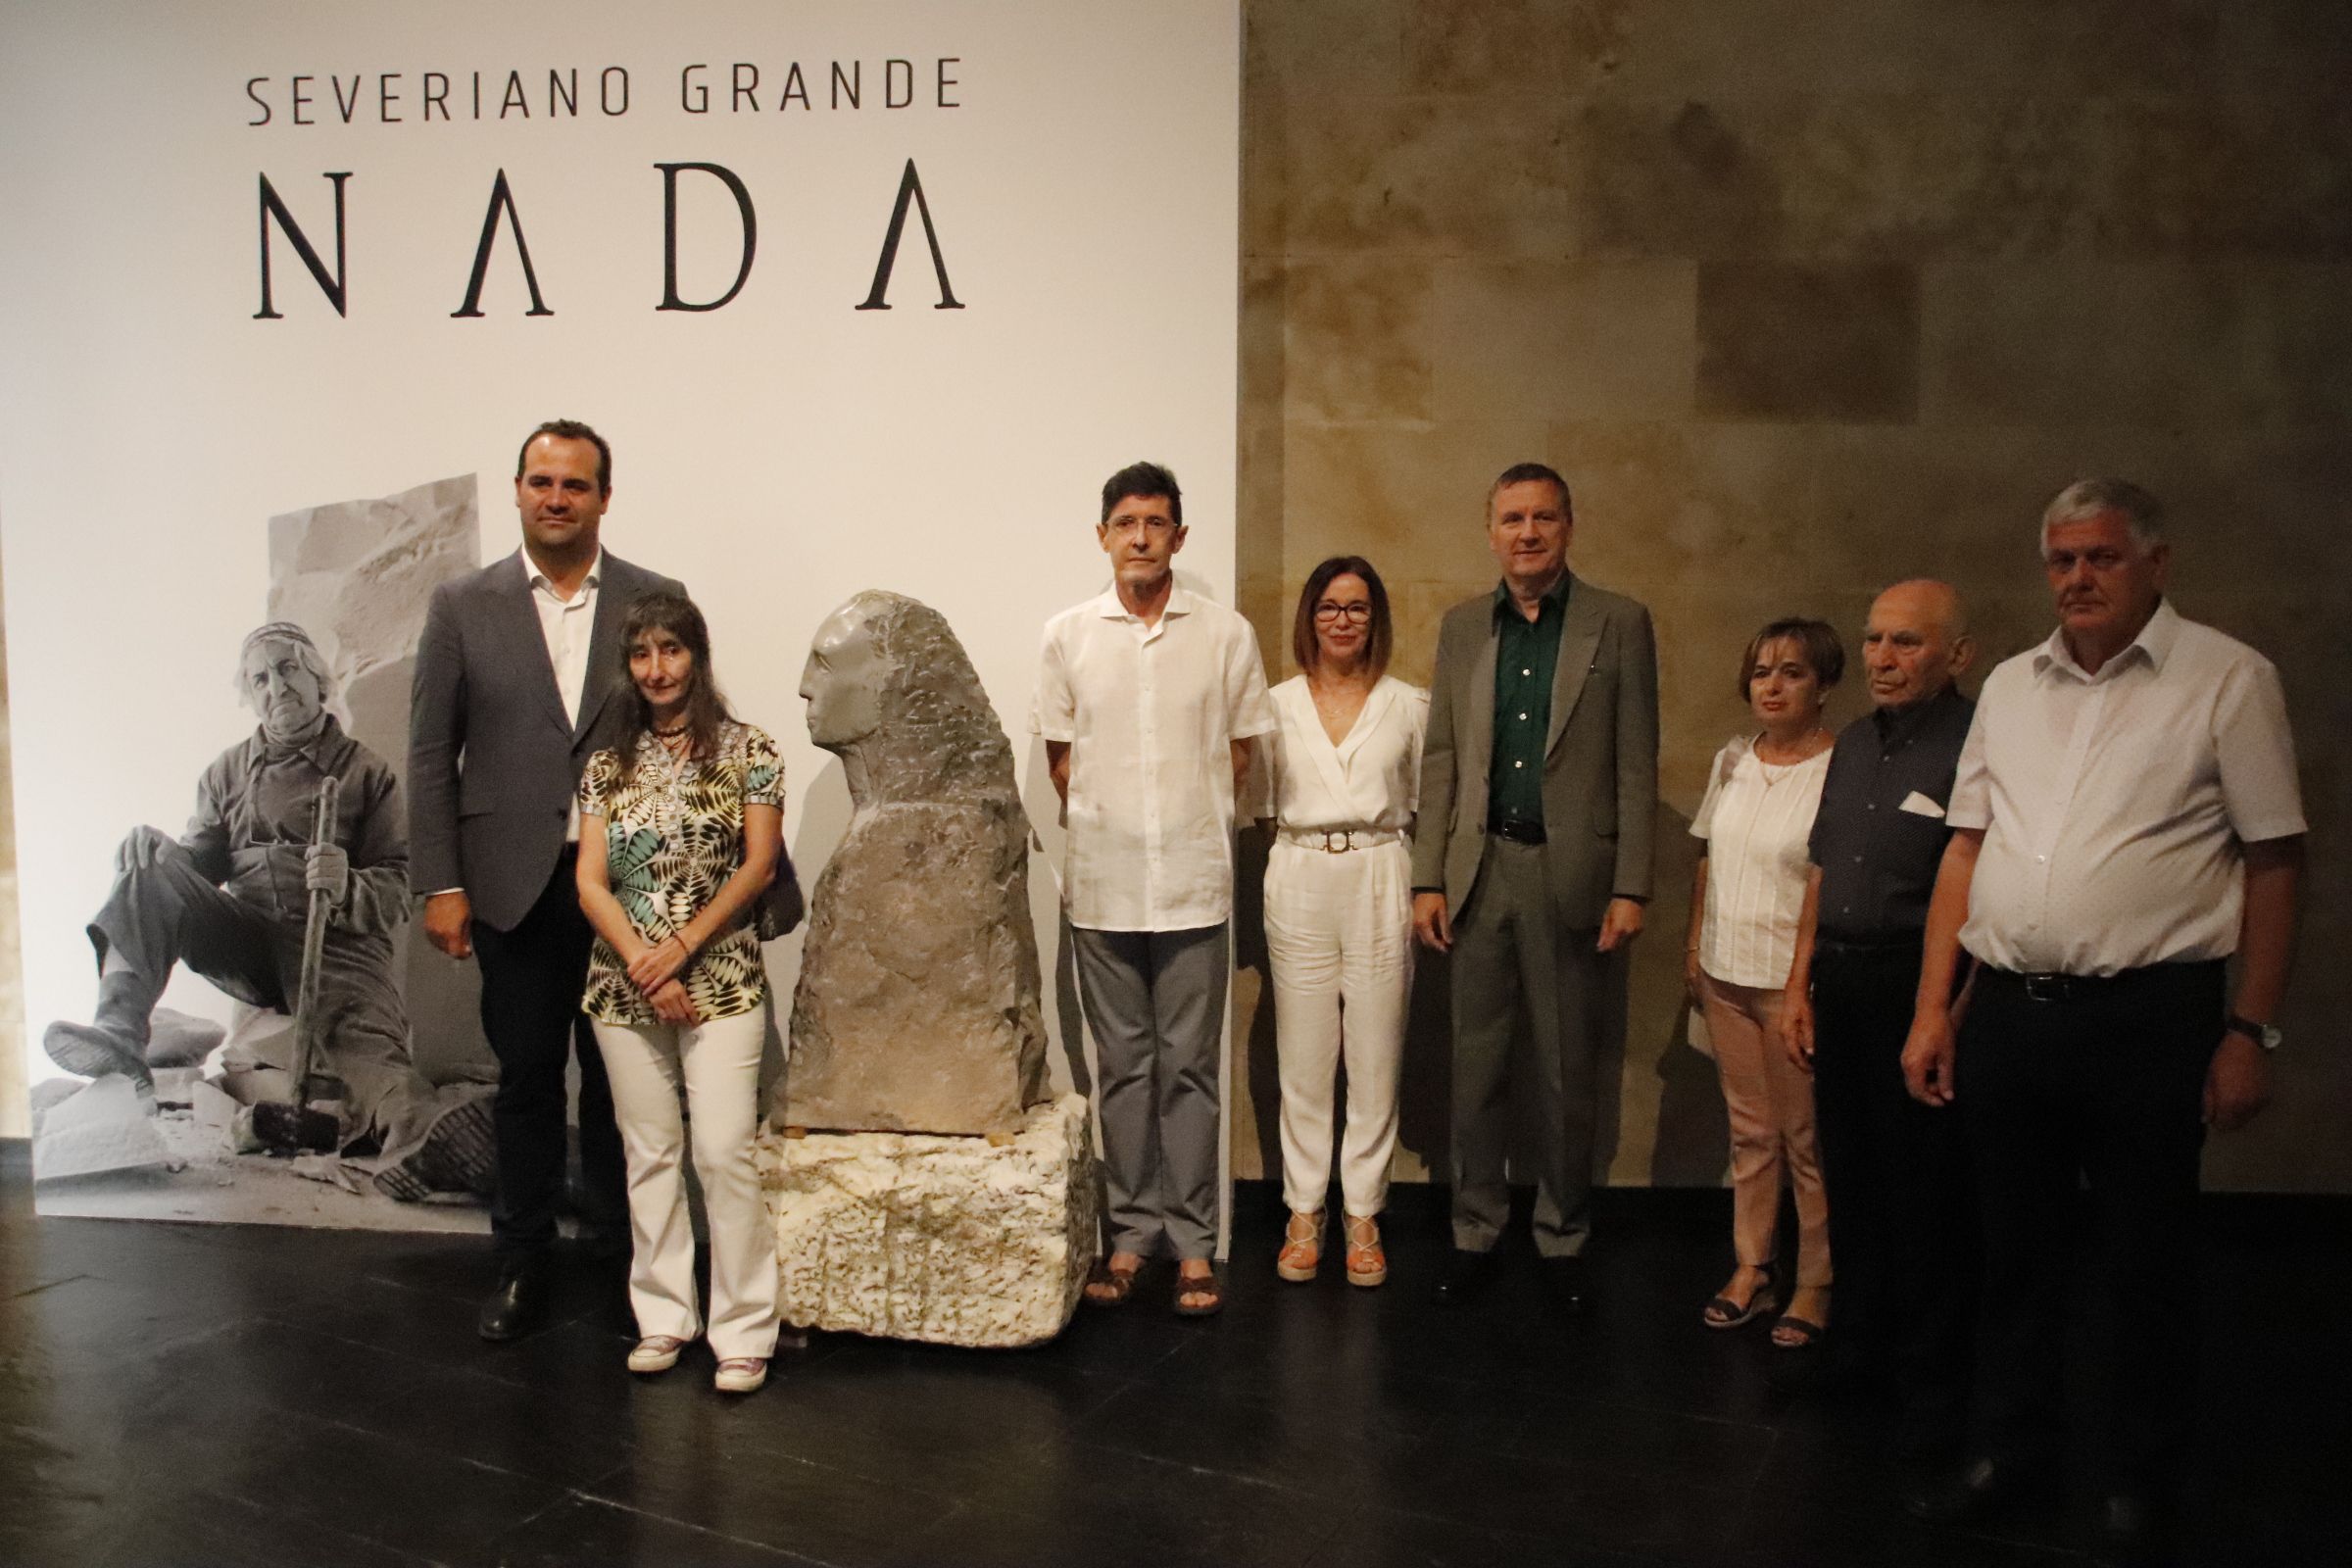 David Mingo, y la hija de Severiano Grande, Nieves Grande, presentan la exposición “NADA” de Severiano Grande